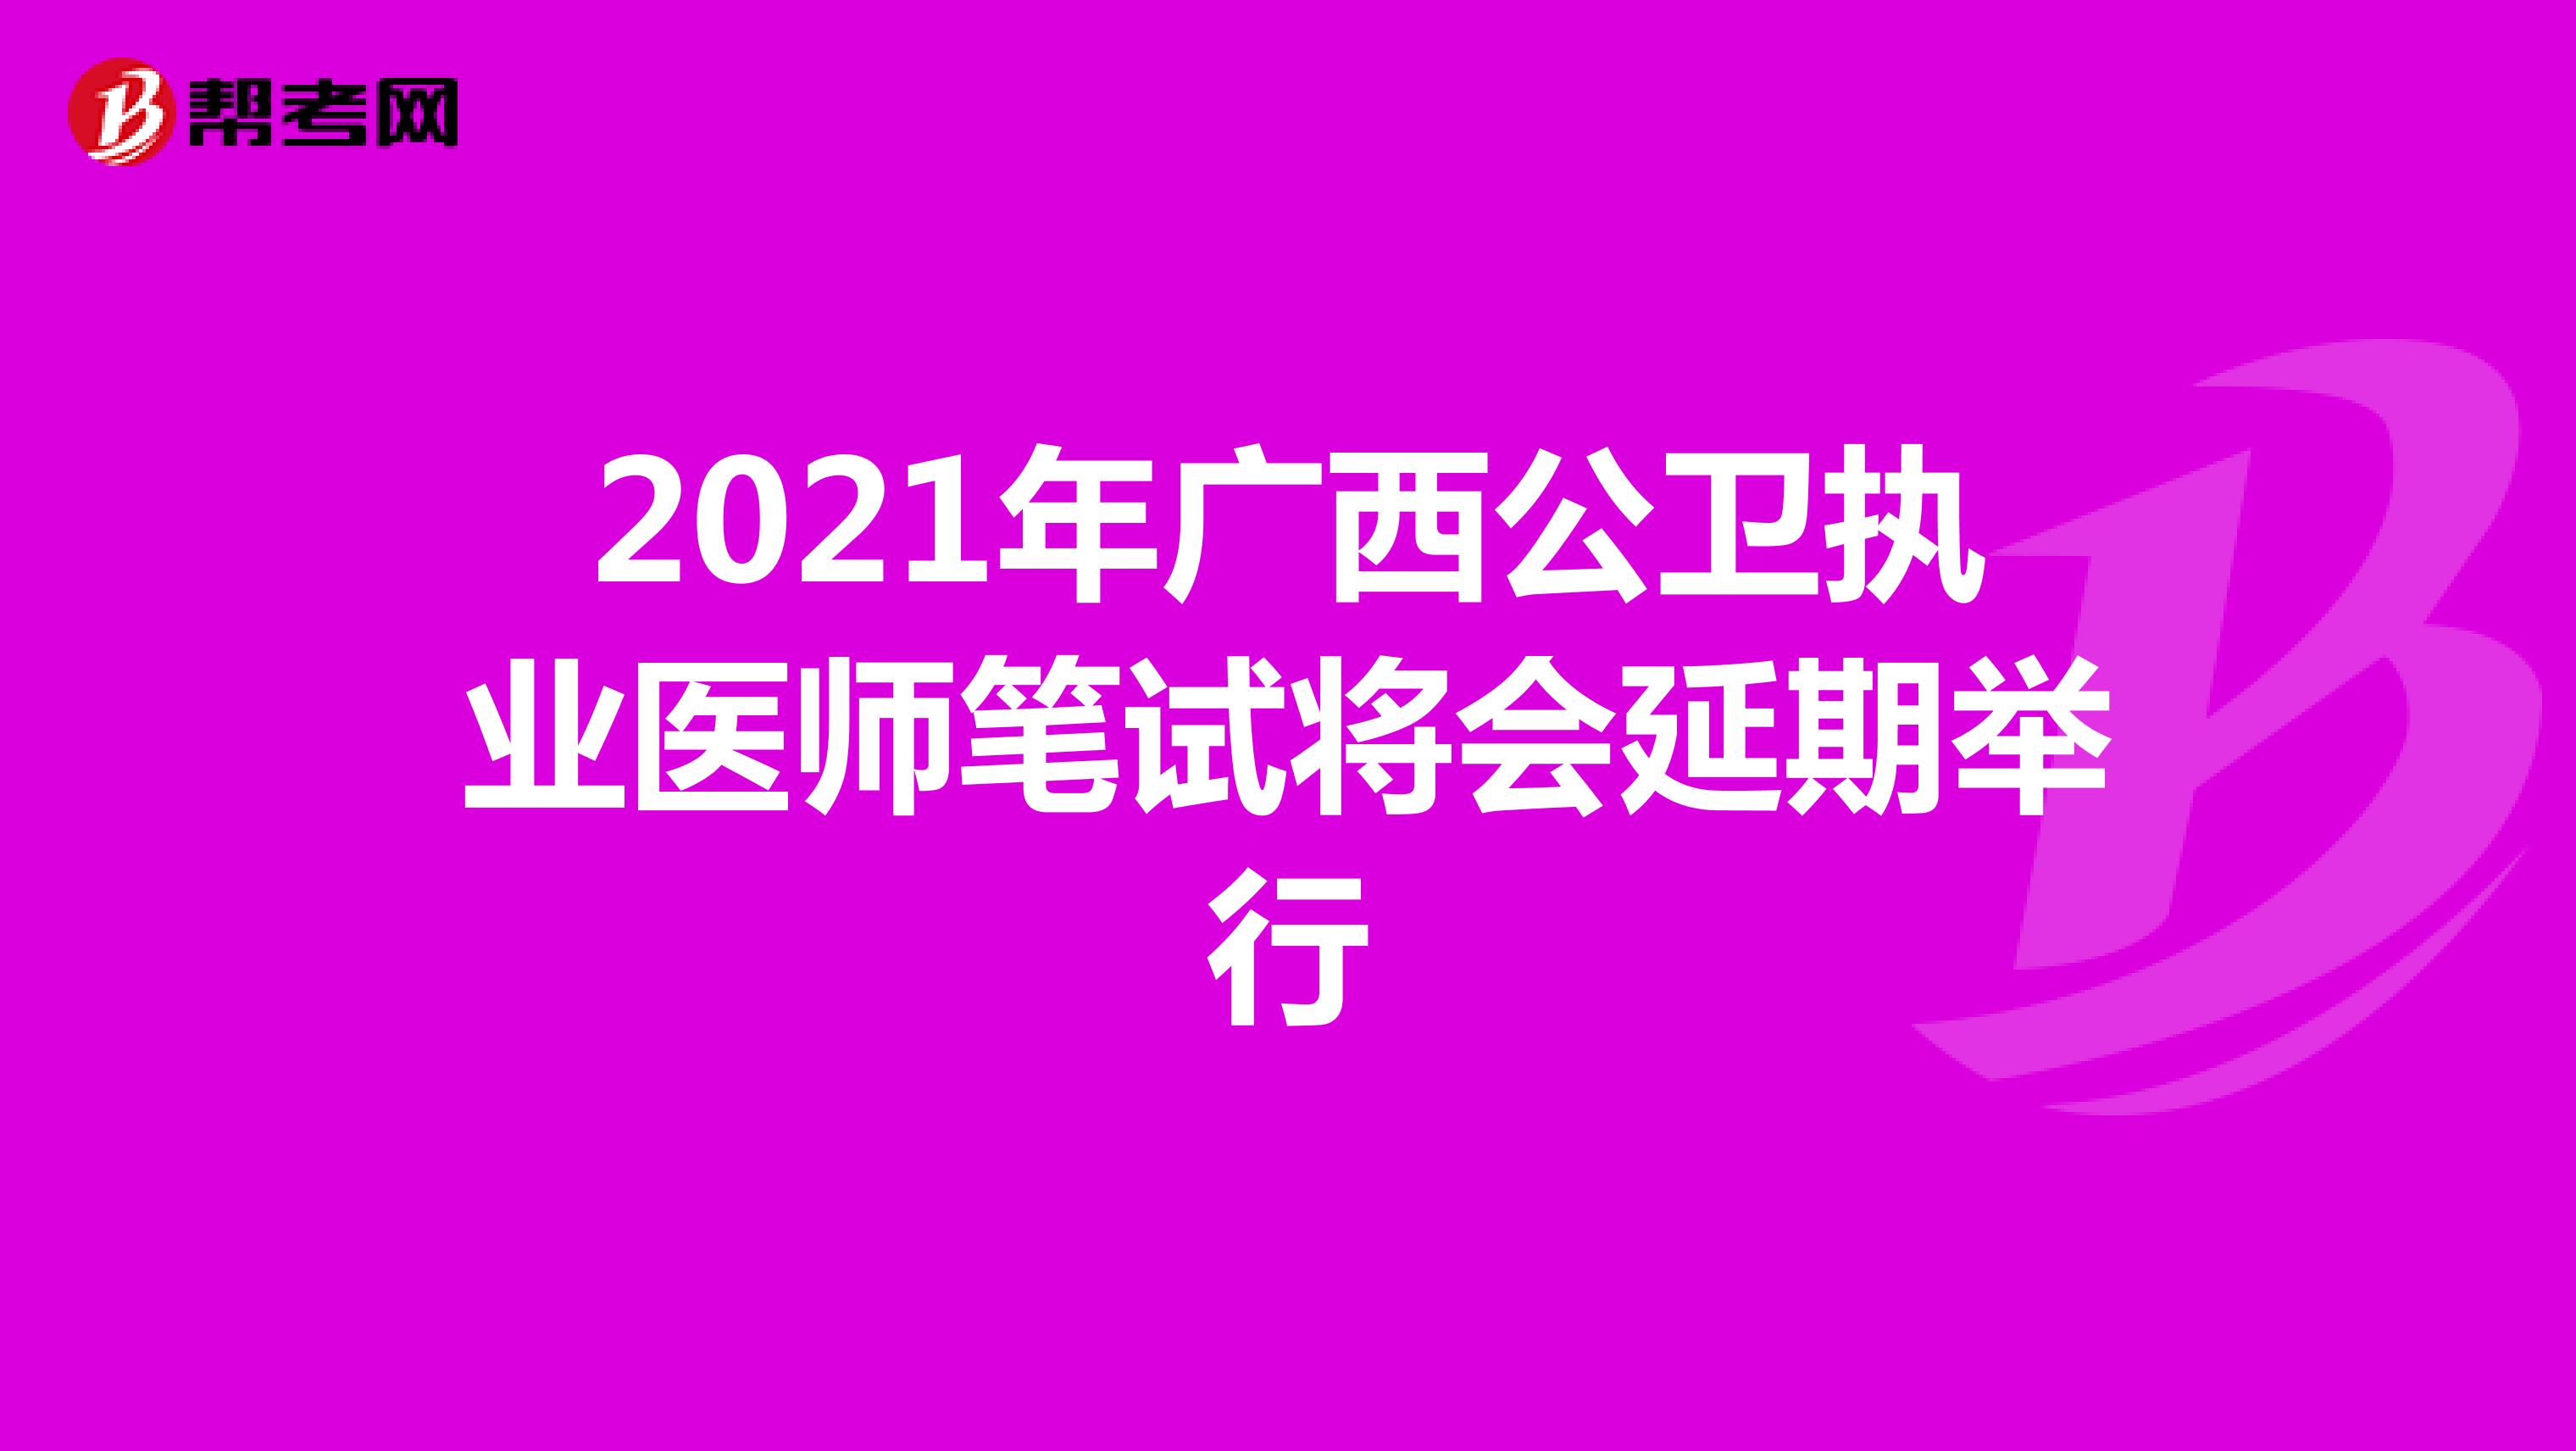 2021年广西公卫执业医师笔试将会延期举行